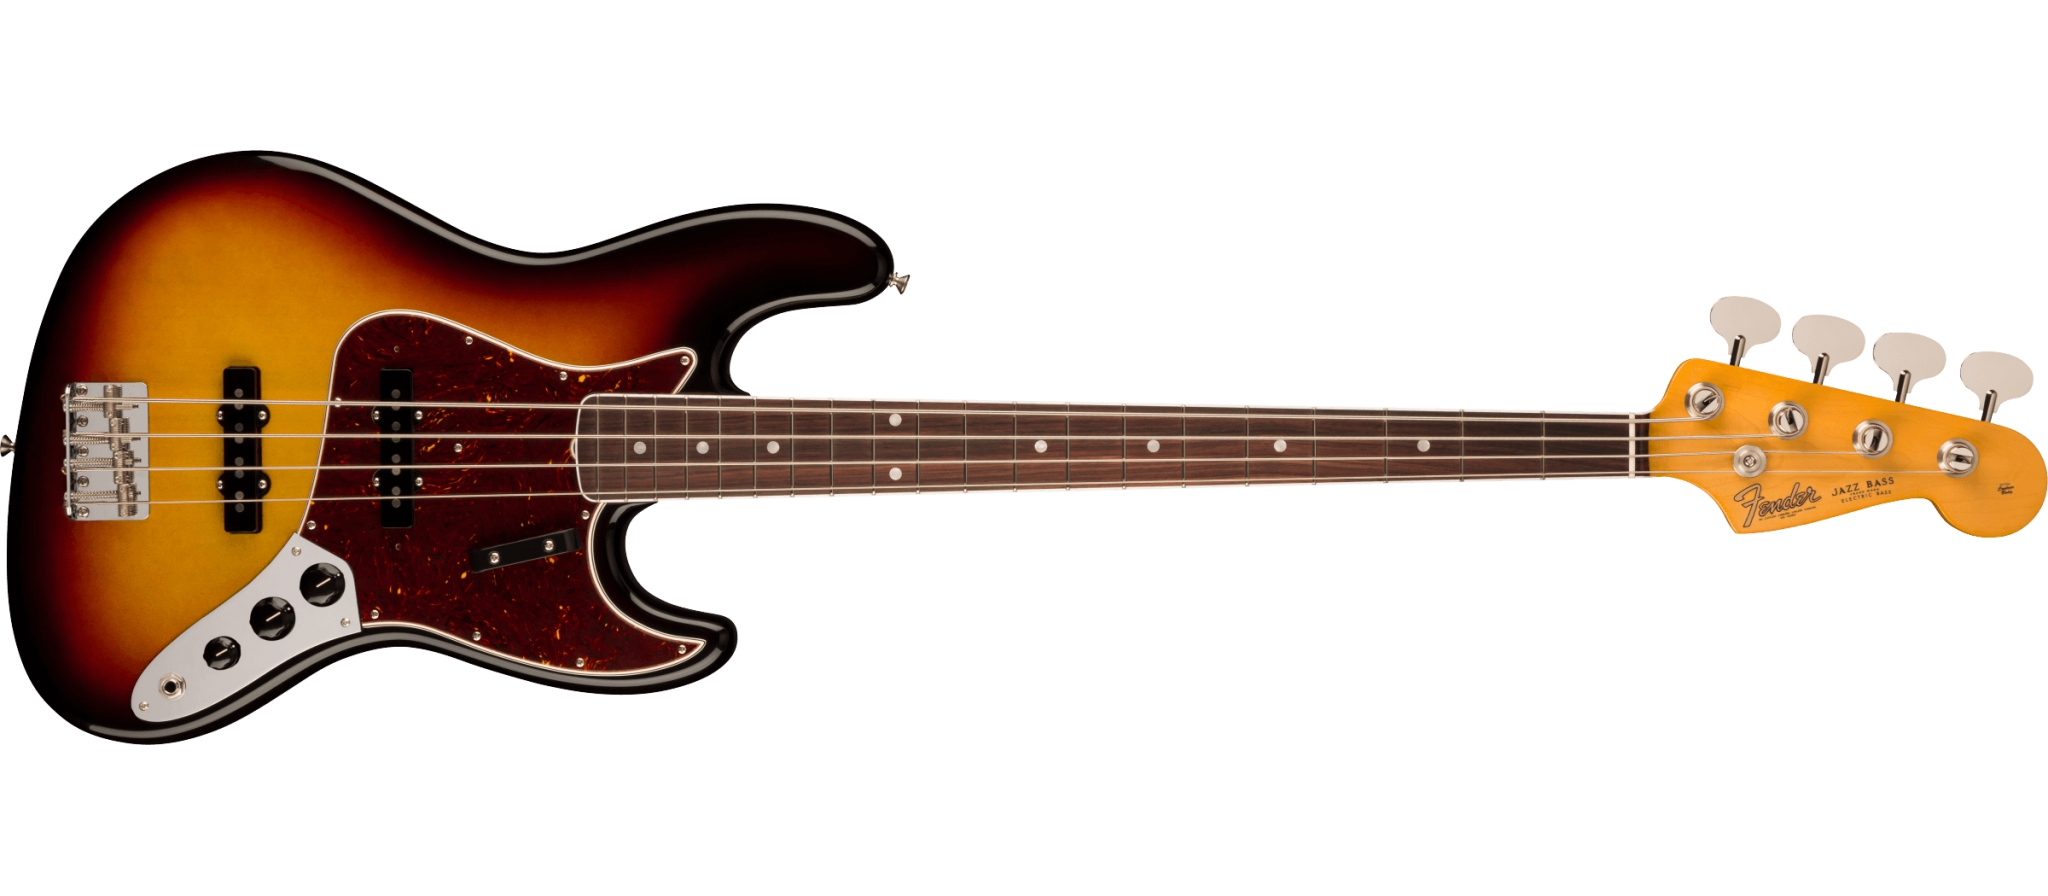 日本限定Fender, Real Vintage Jazz Bass Pickup set ! ピックアップ